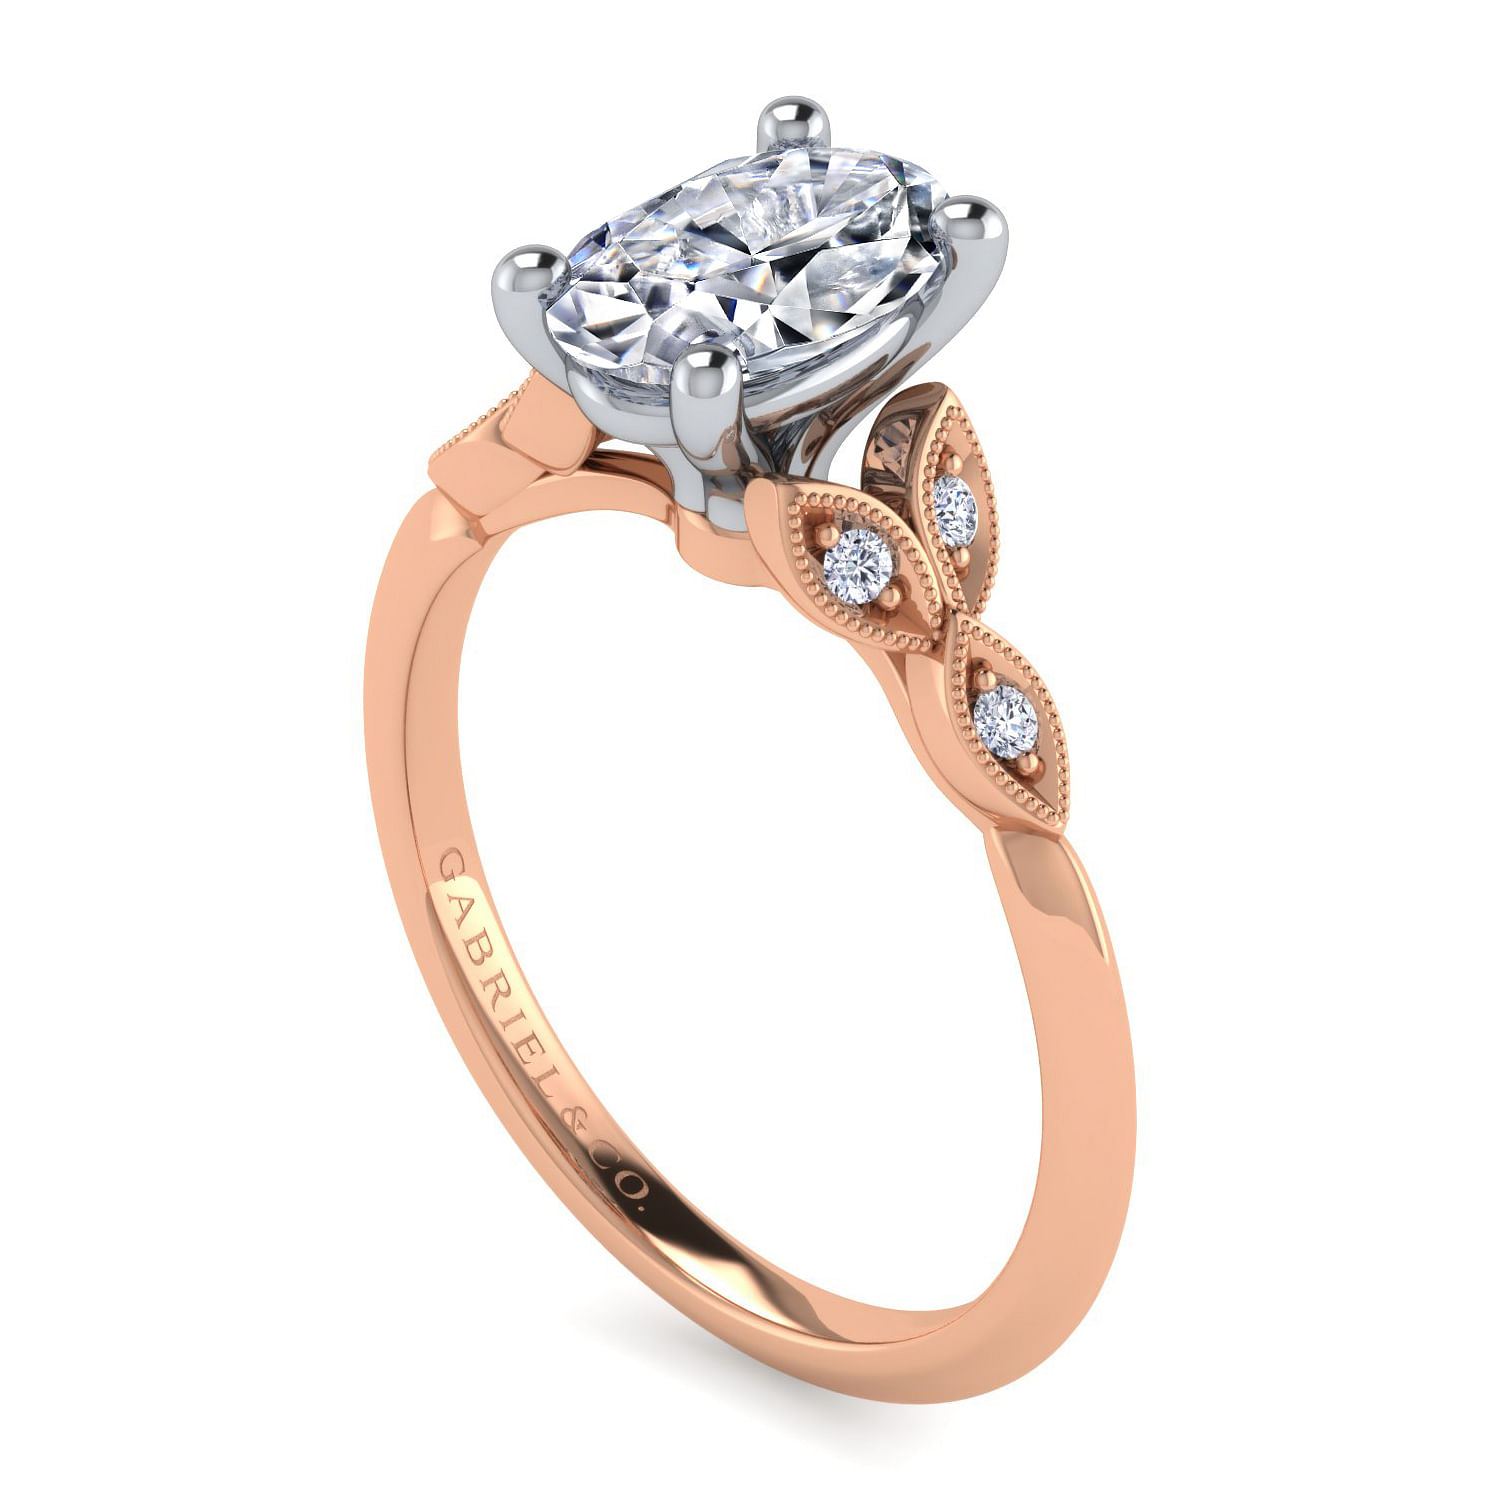 Vintage Inspired 14K White-Rose Gold Split Shank Oval Diamond Engagement Ring